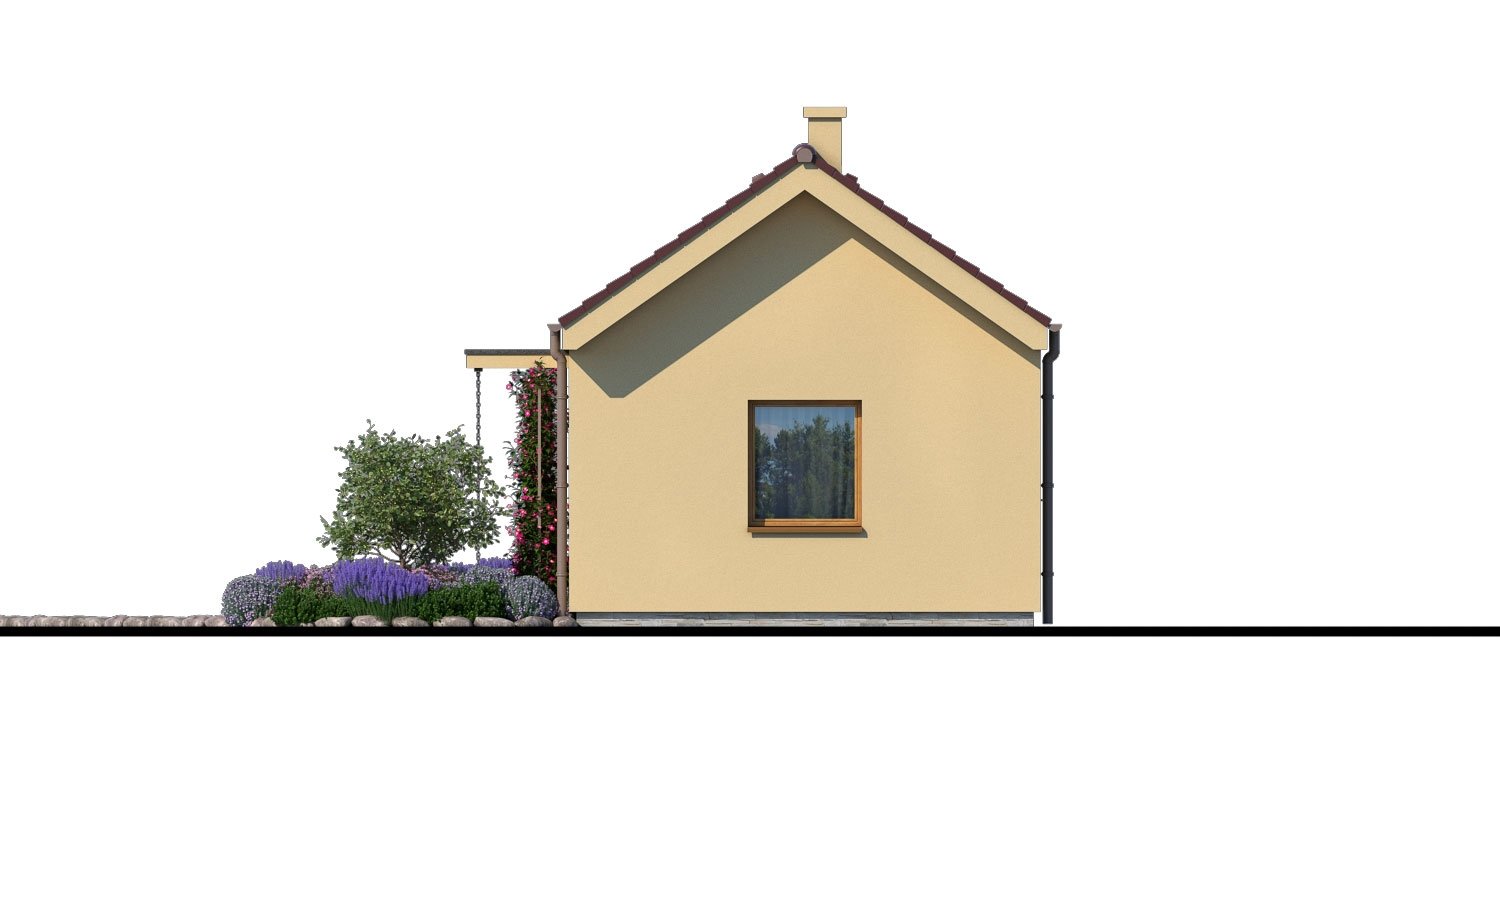 Zrkadlový pohľad 2. - Levný zděný dům na úzký pozemek, vhodný i na zahradní domek, nebo chatu. Možnost realizace s pultovou nebo valbovou střechou.